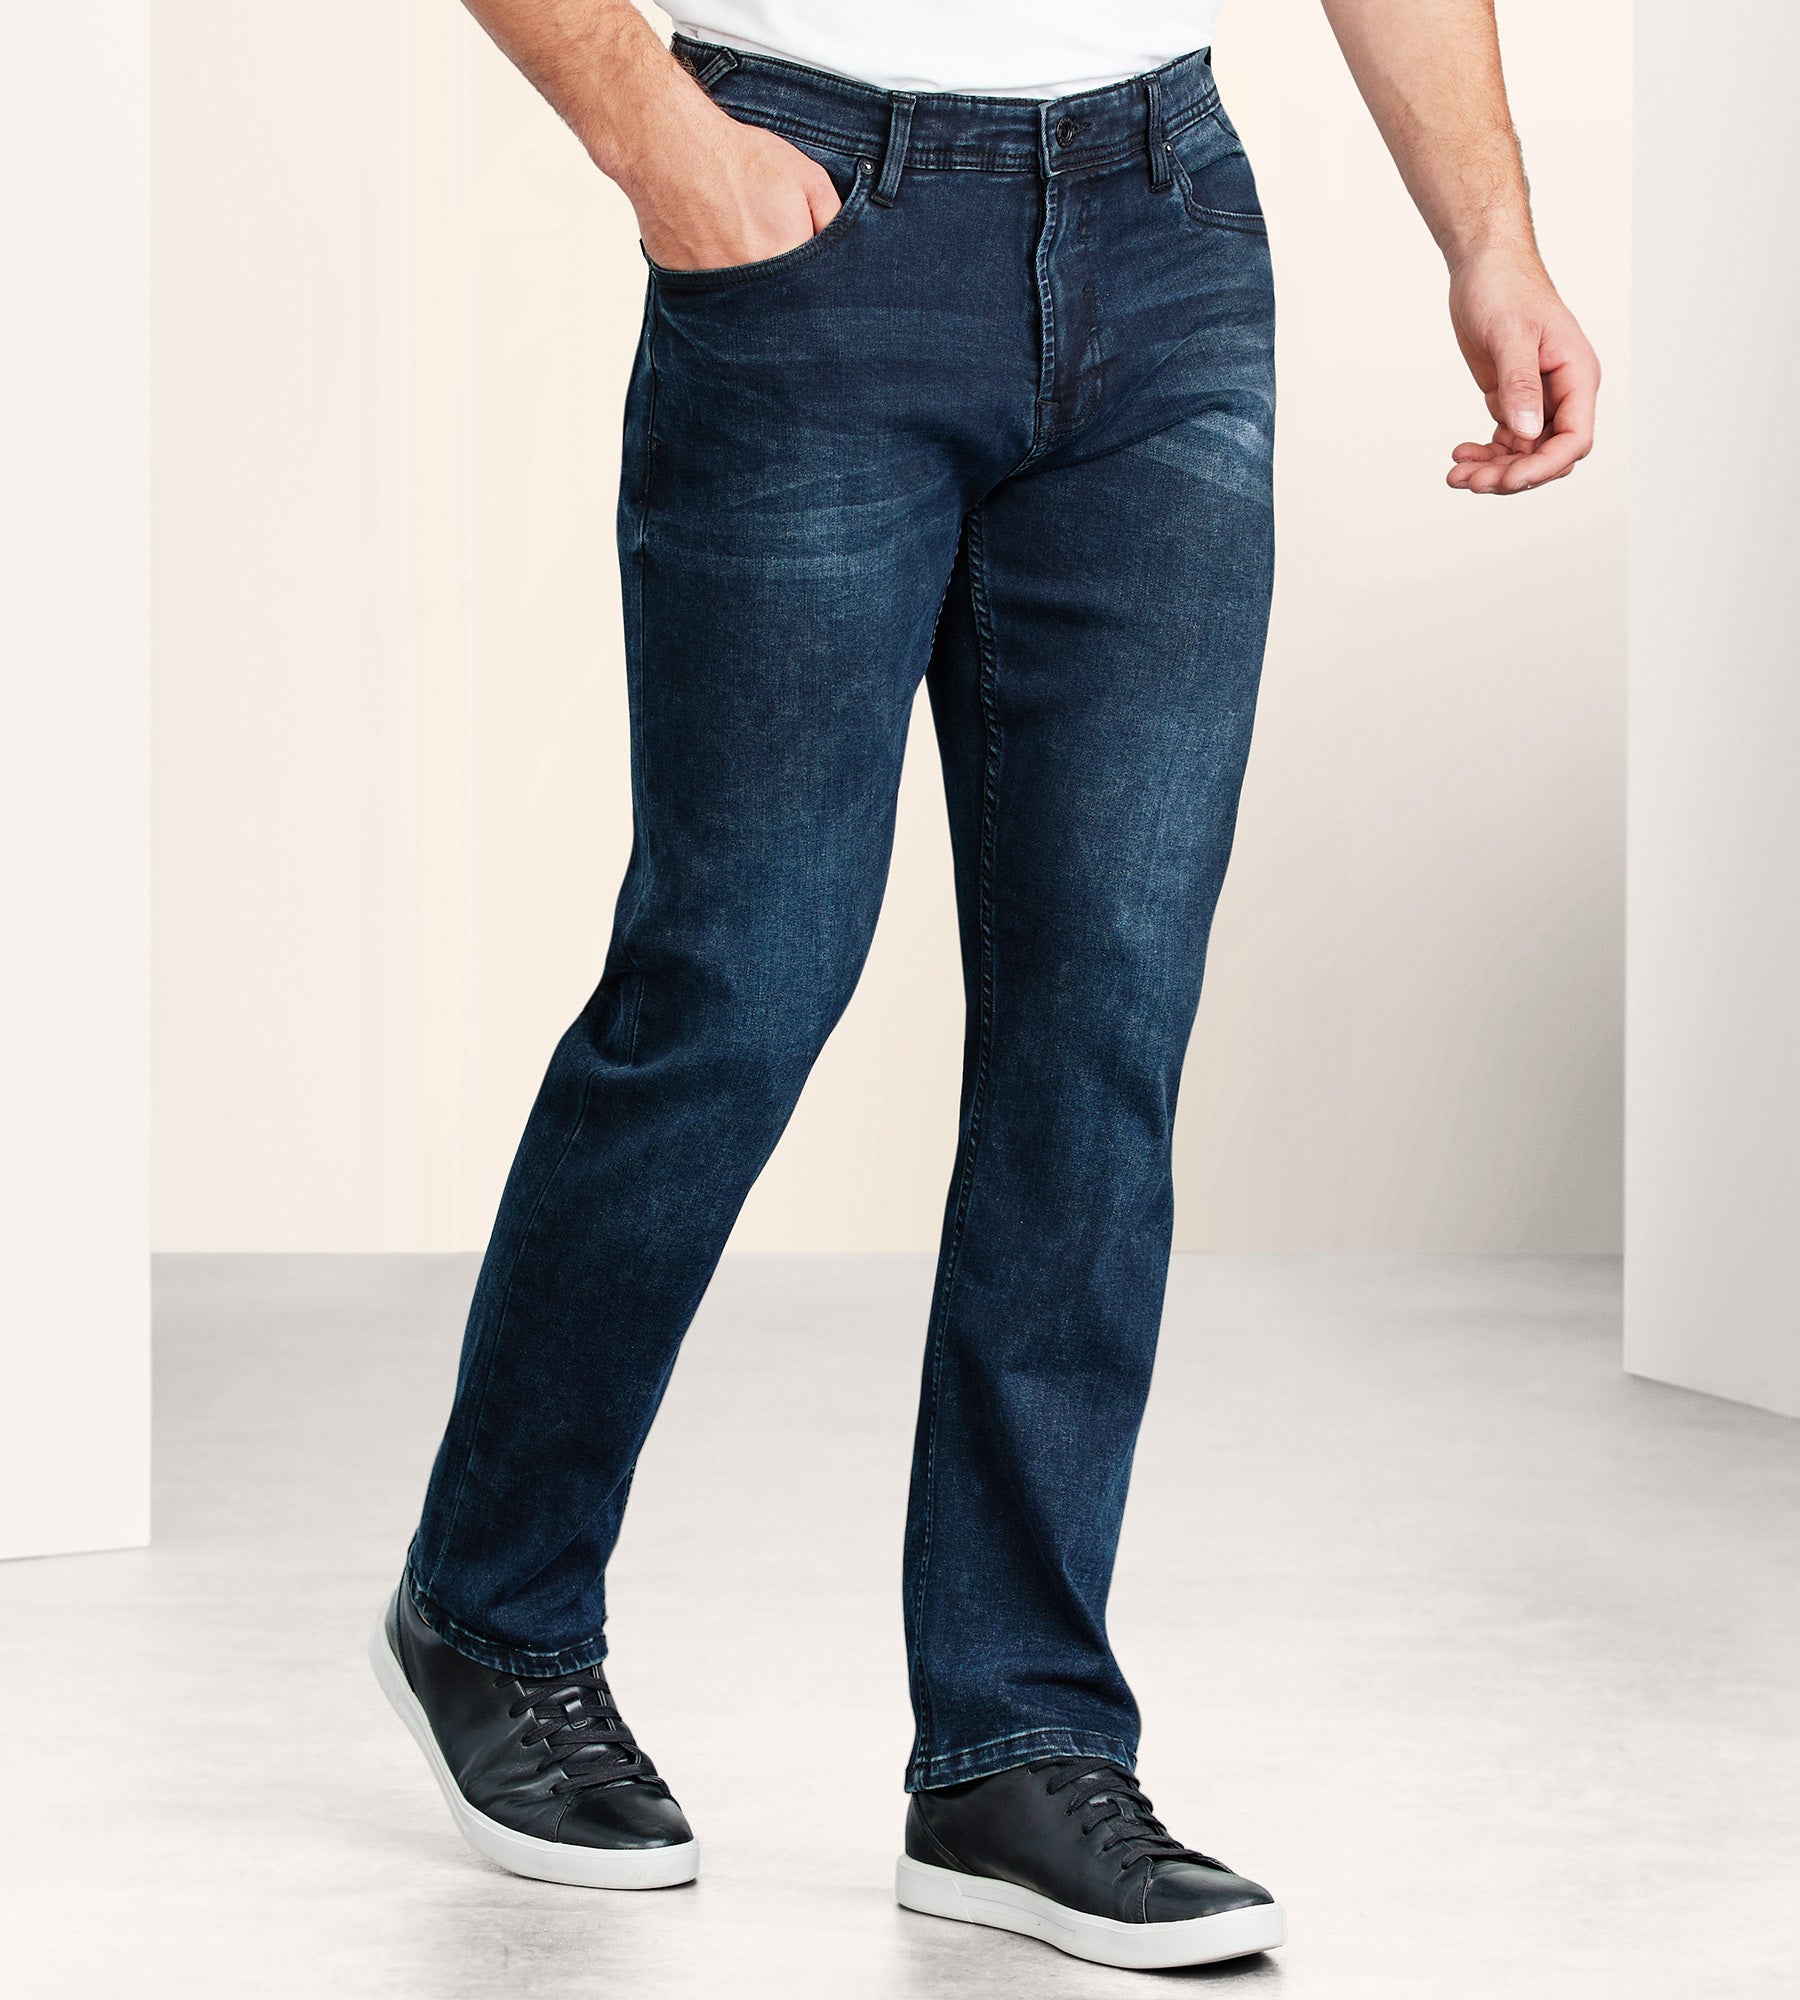 Five-Pocket denim jeans cotton strech MCS medium wash outlet